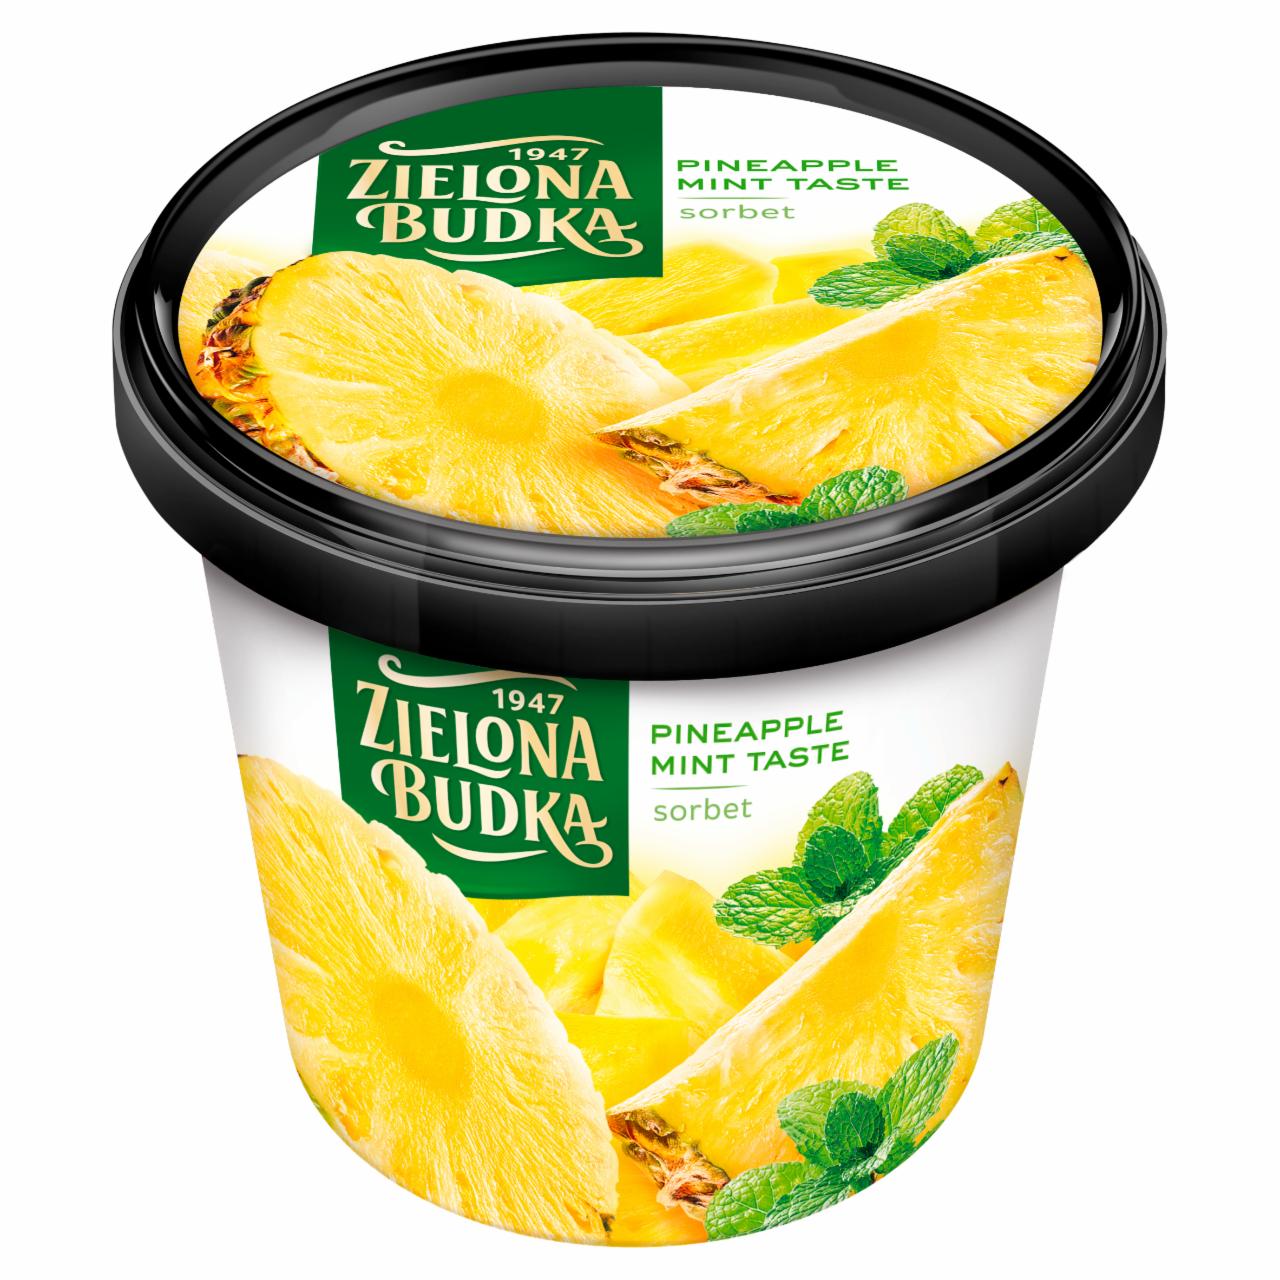 Zdjęcia - Zielona Budka Sorbet ananasowy ze smakiem miętowym 500 ml